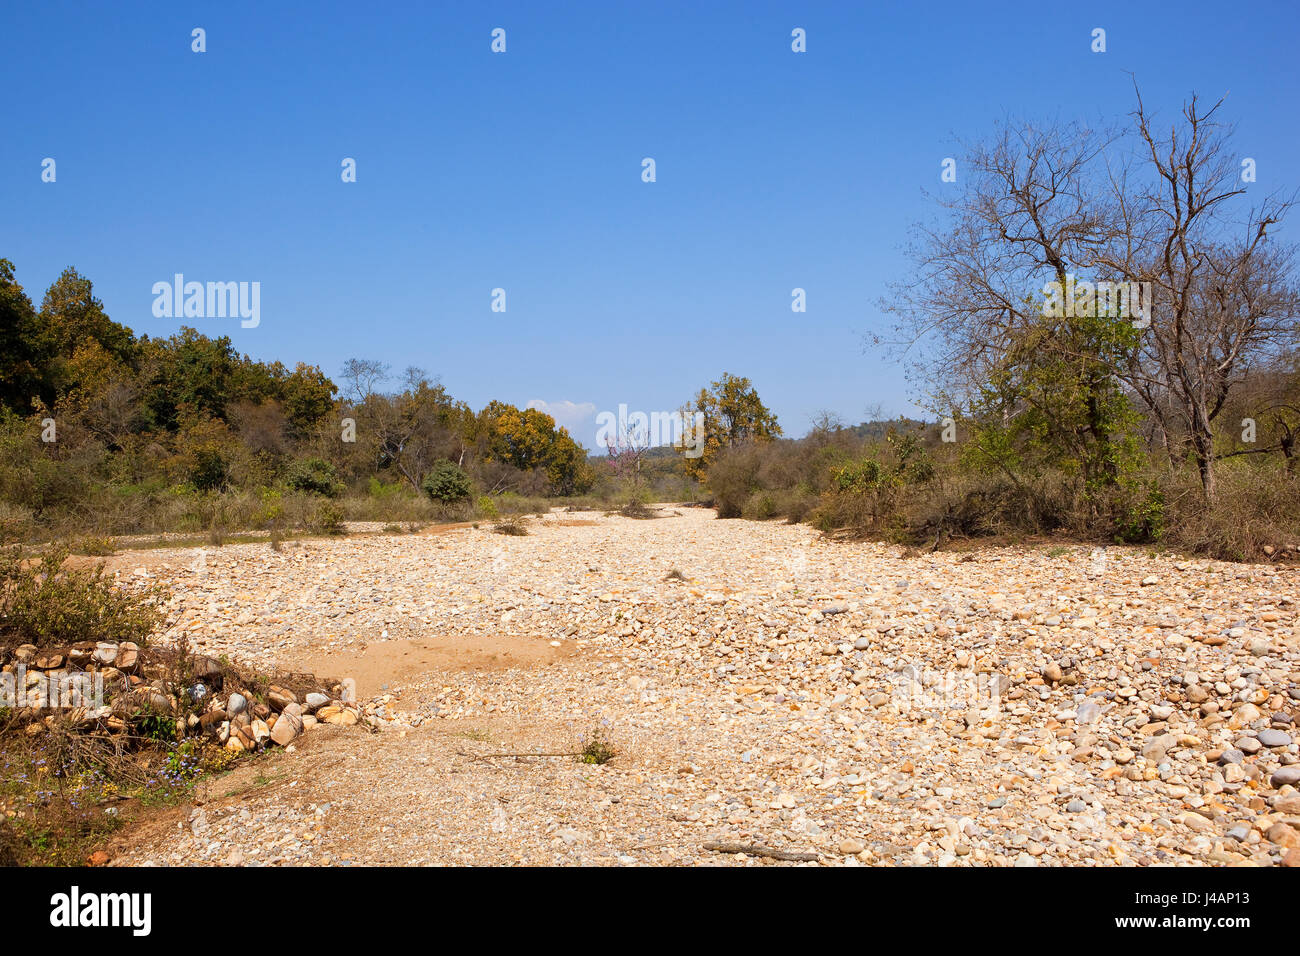 Un lit de rivière à sec avec des cailloux blancs dans le kalesar parc national dans le nord de l'Inde avec un mélange de bois et d'herbes sèches sous un ciel bleu au printemps Banque D'Images